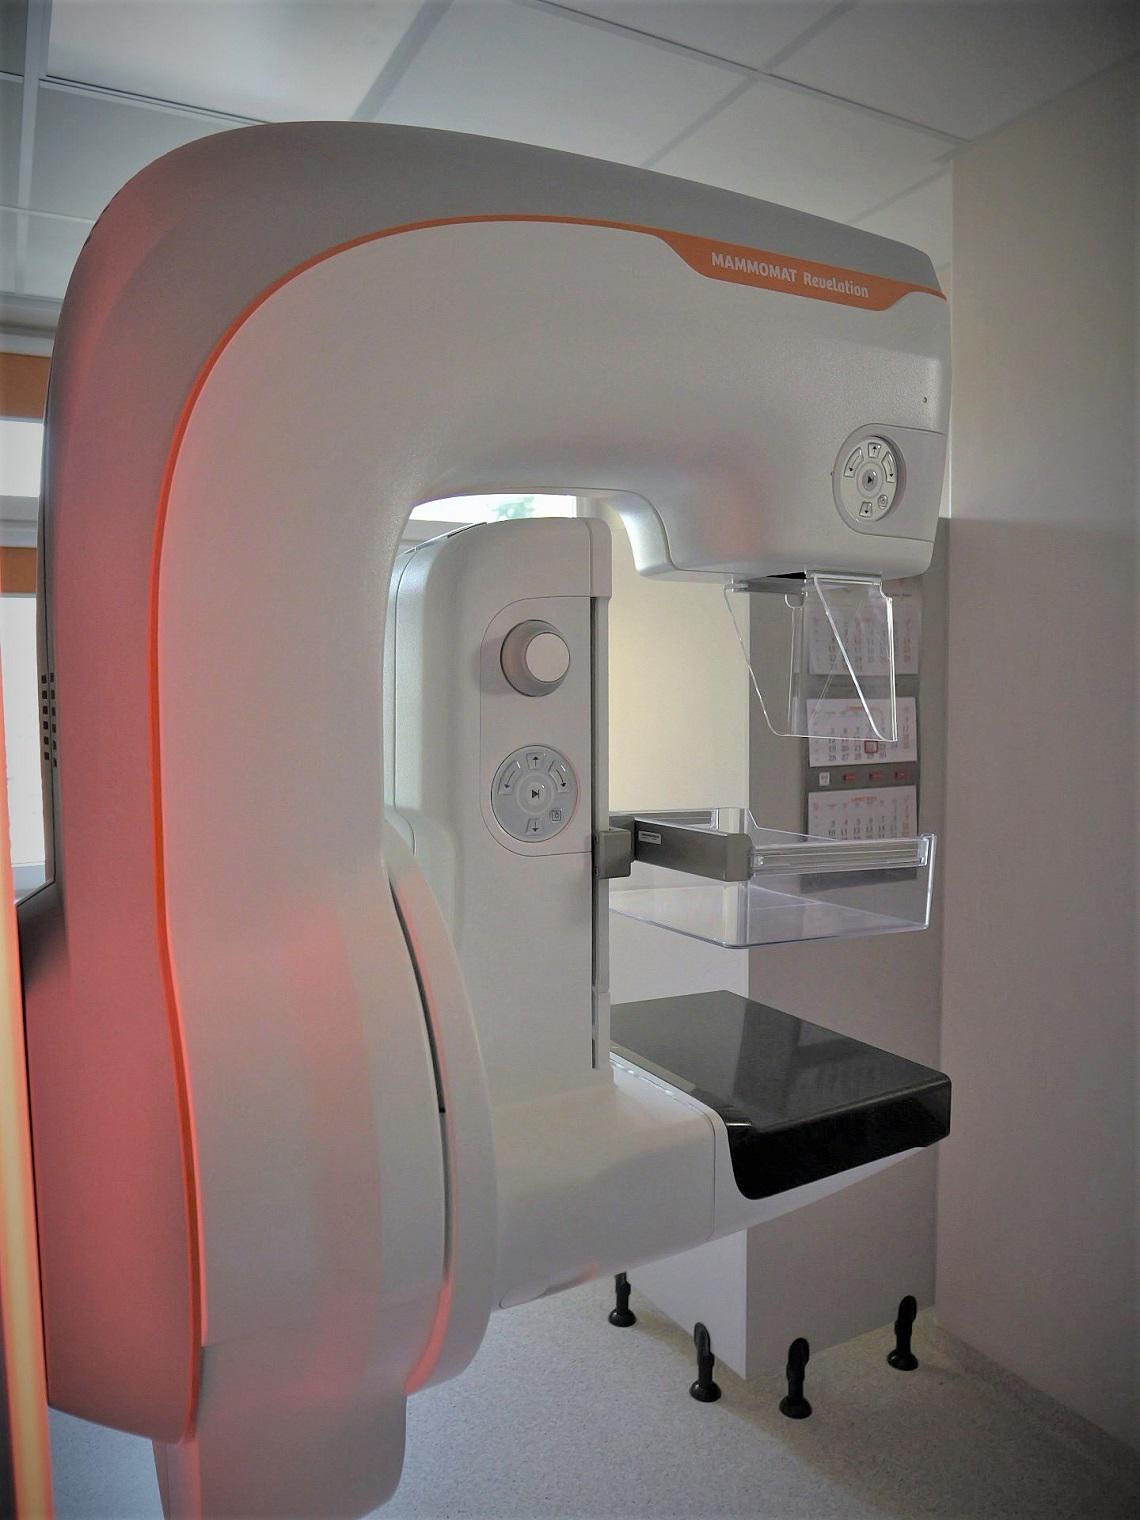 Nowy mammograf w należącym do KGHM Miedziowym Centrum Zdrowia w Lubinie